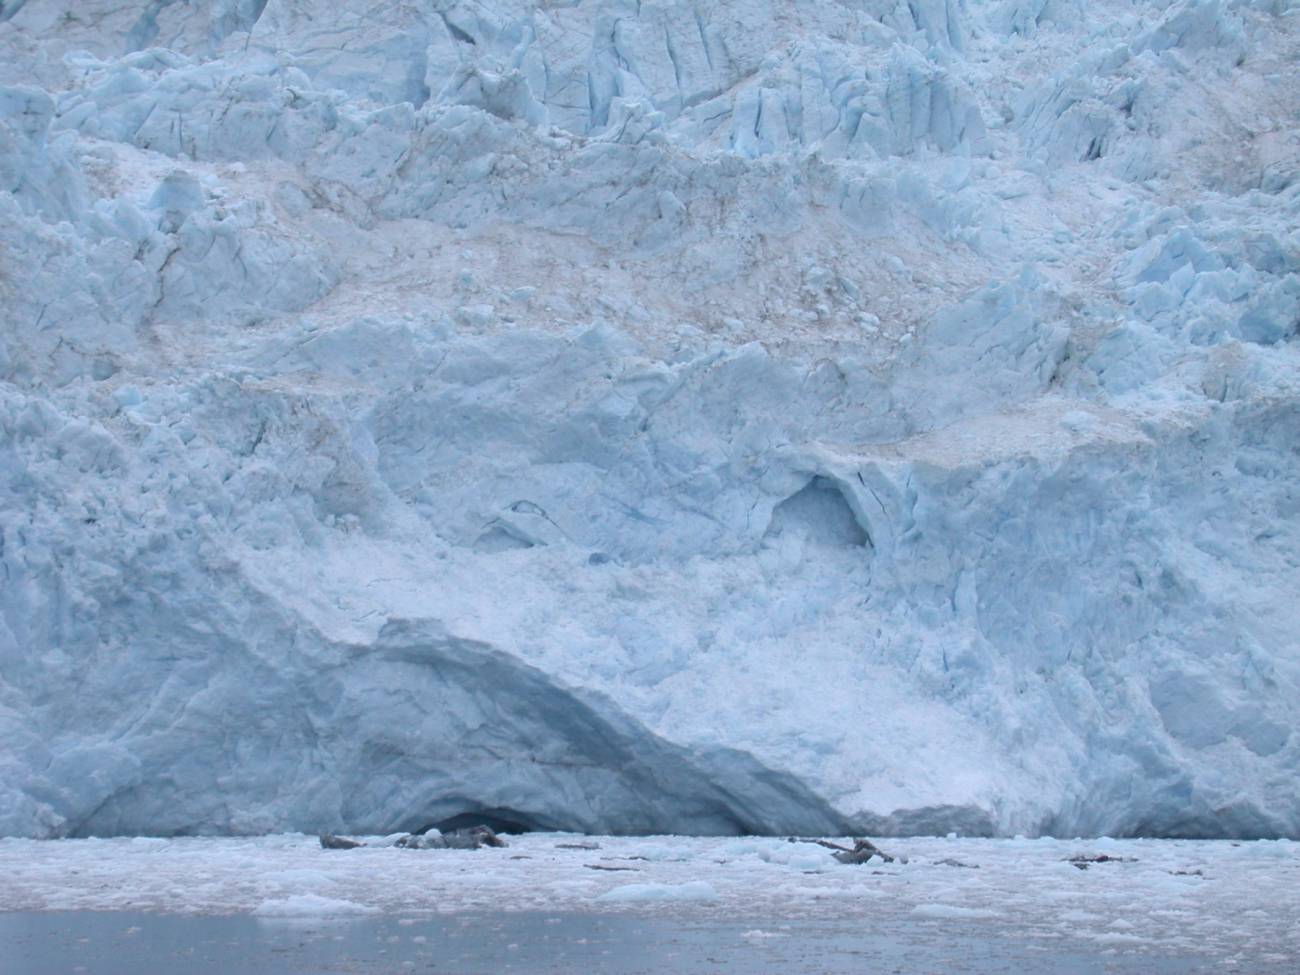 Aialik Glacier in Kenai Fjords